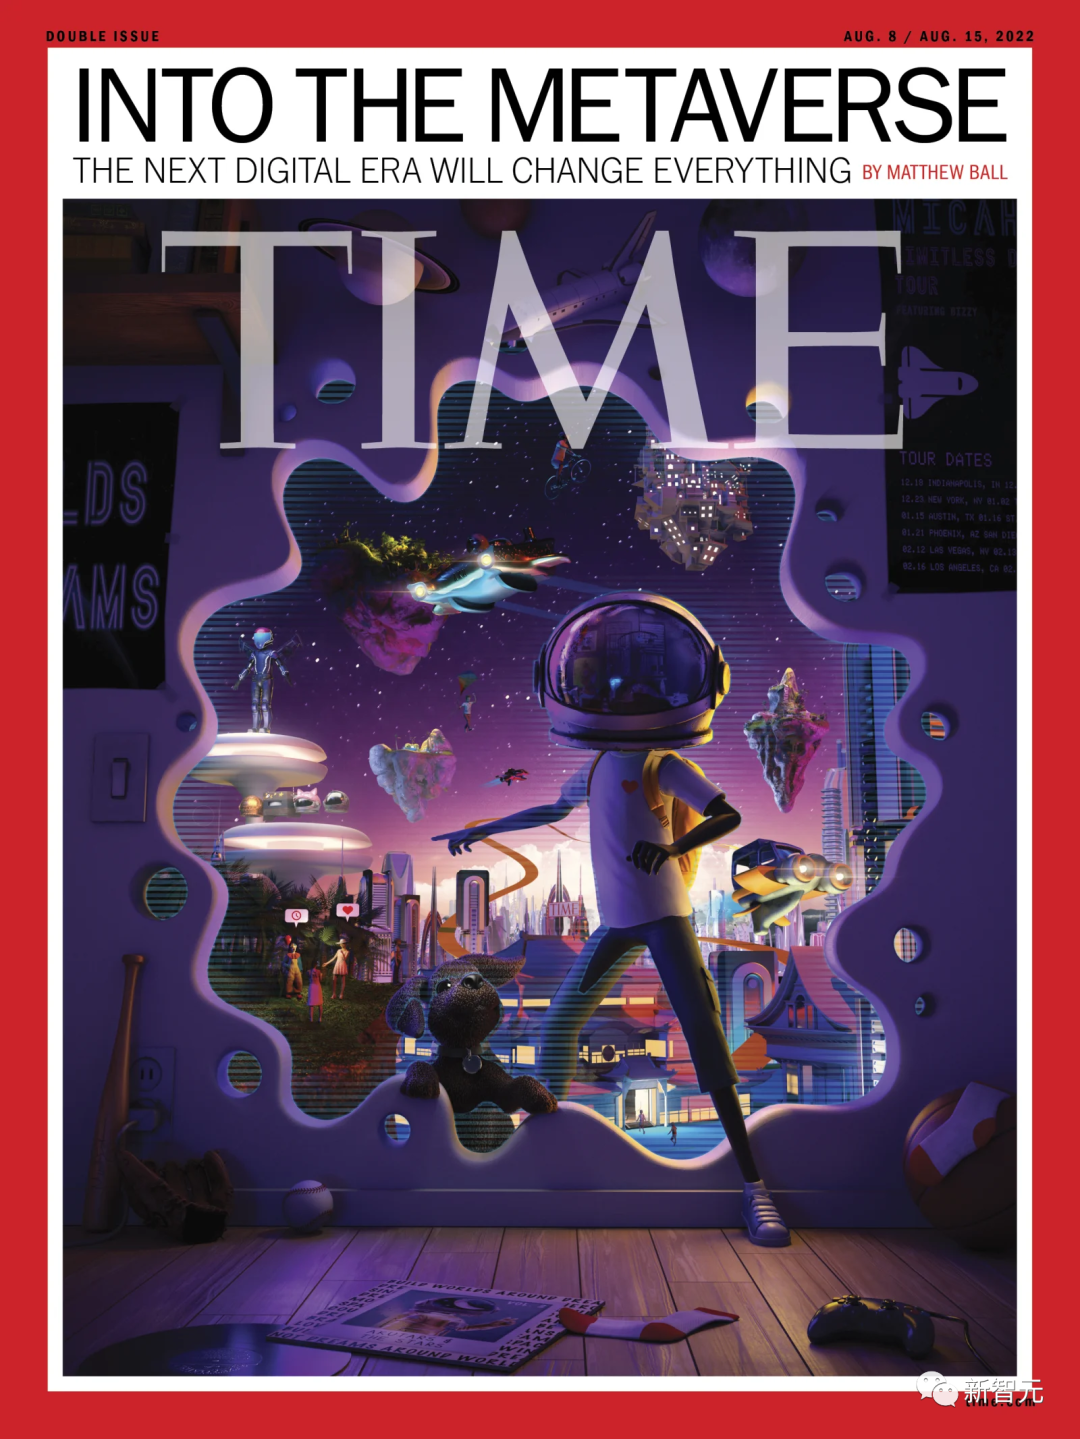 《时代》杂志重磅封面：元宇宙时代将改变世界